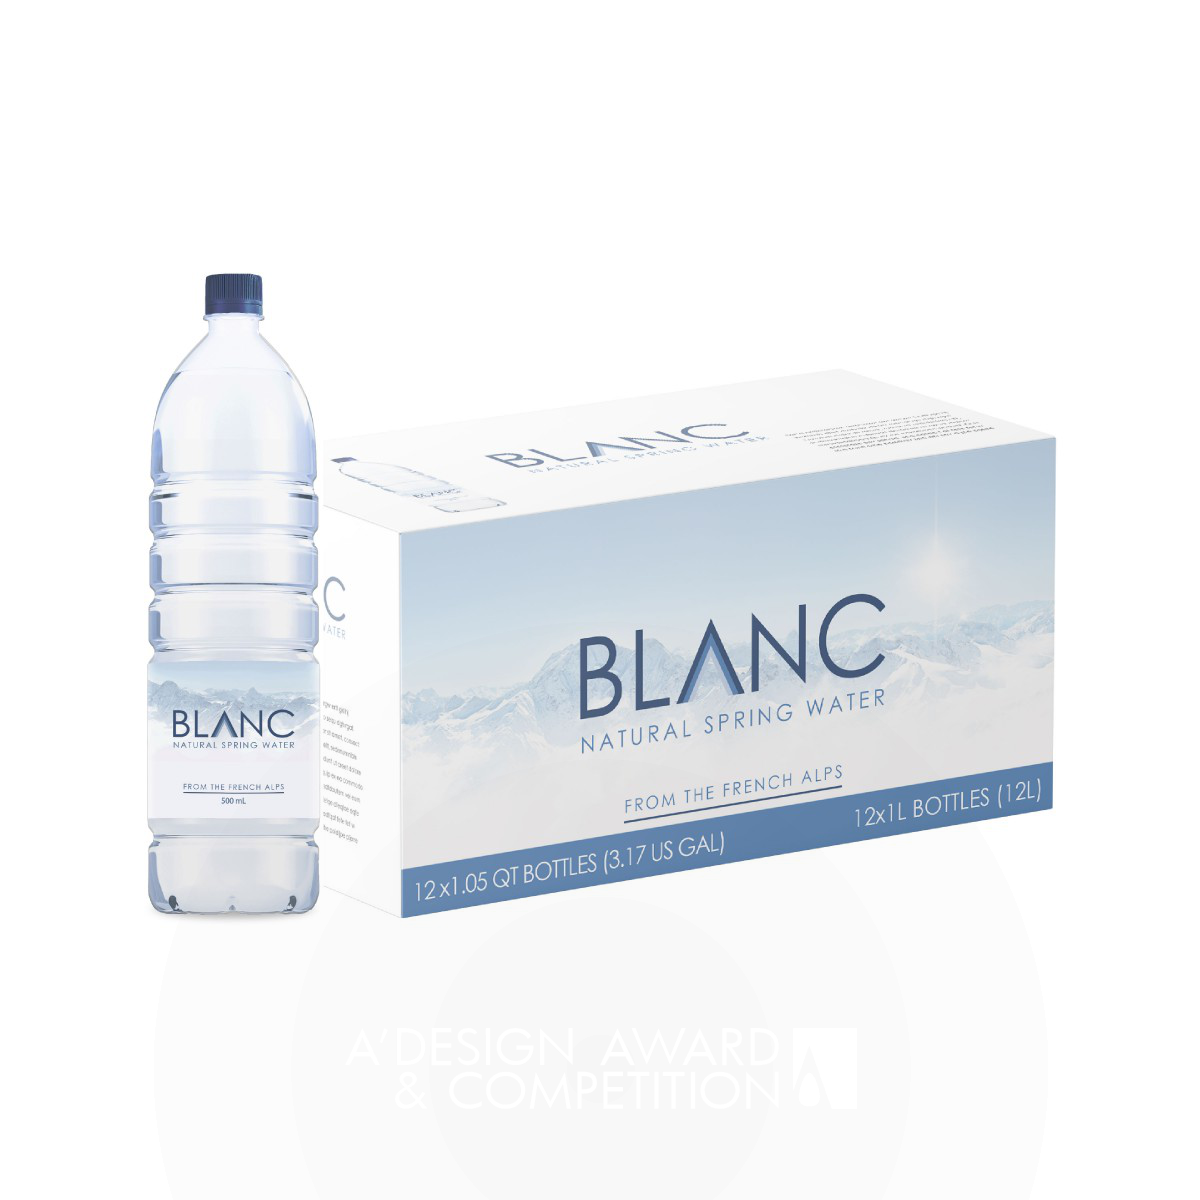 Blanc Water: Een Nieuwe Identiteit voor een Prestigieus Watermerk